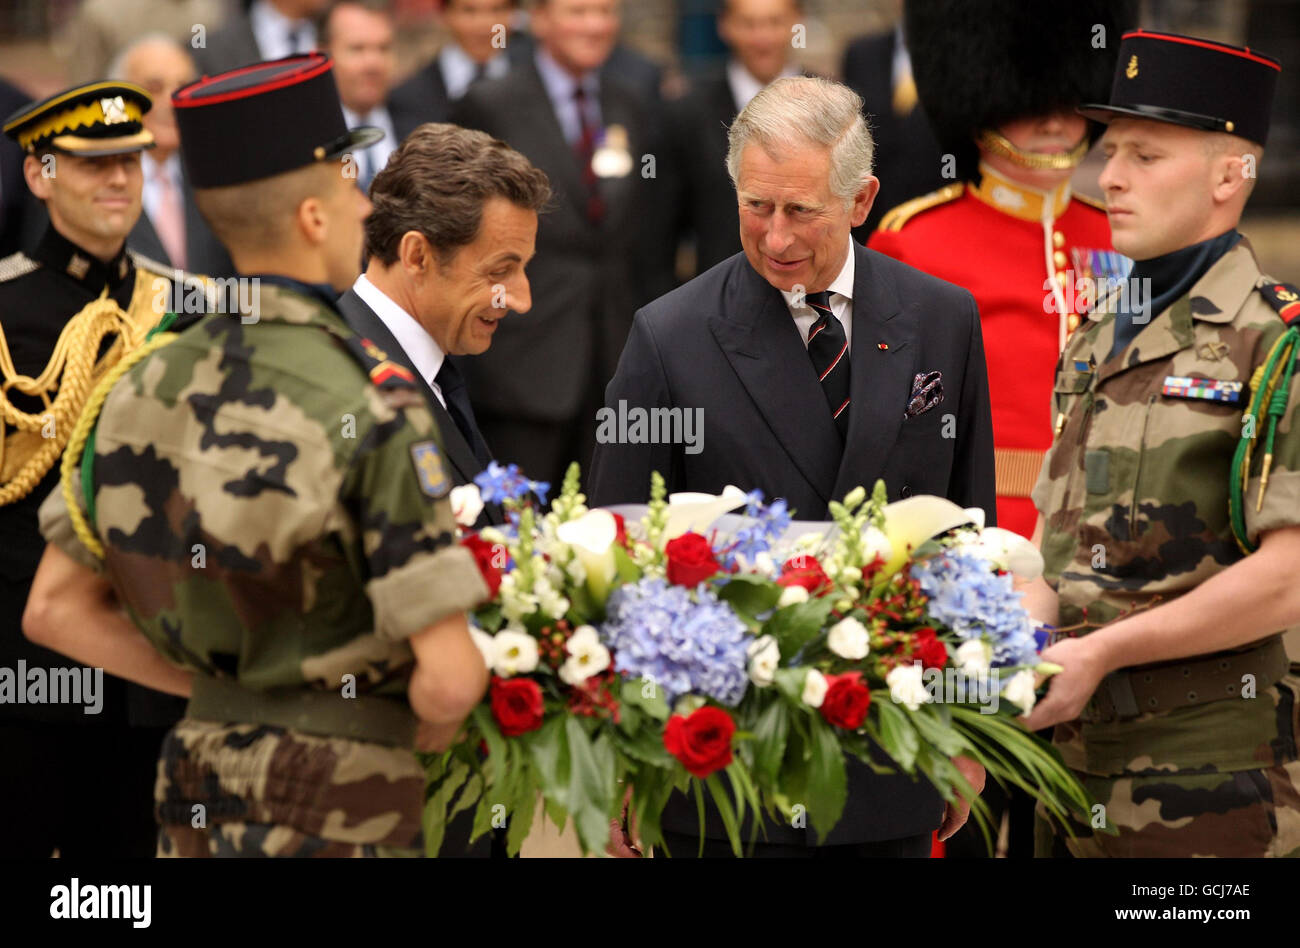 Le prince de Galles (à droite) et le président français Nicolas Sarkozy se préparent à déposer une couronne sur les statues de HM King George VI et HM Queen Elizabeth dans le Mall de Londres. Banque D'Images